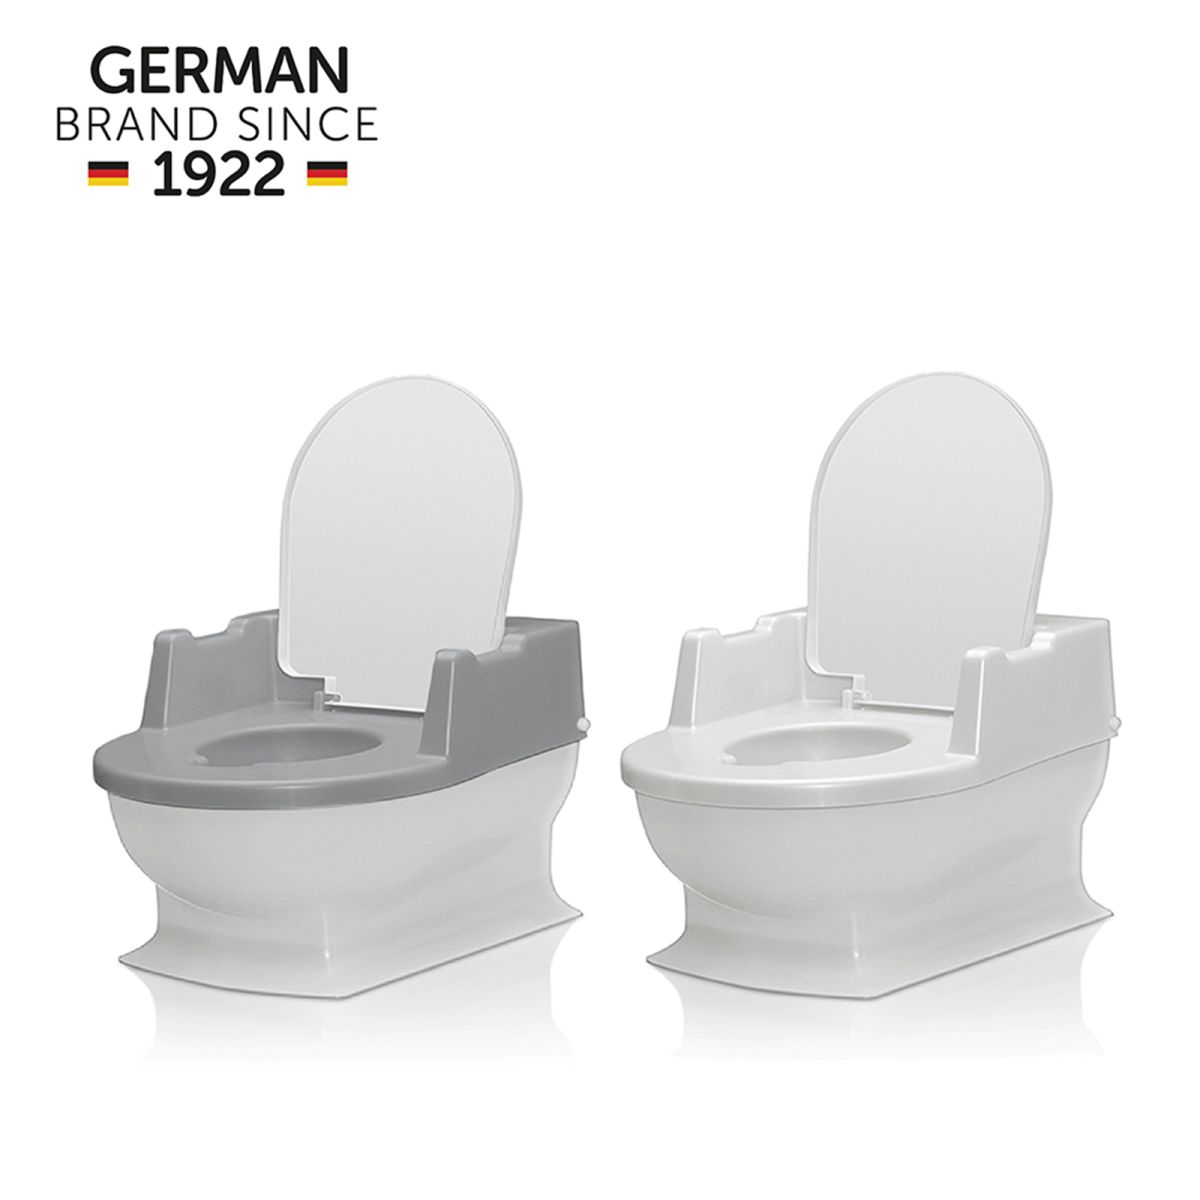 Reer Sitzfritz Die Mini-Toilette zum Großwerden 4411.0 weiss 